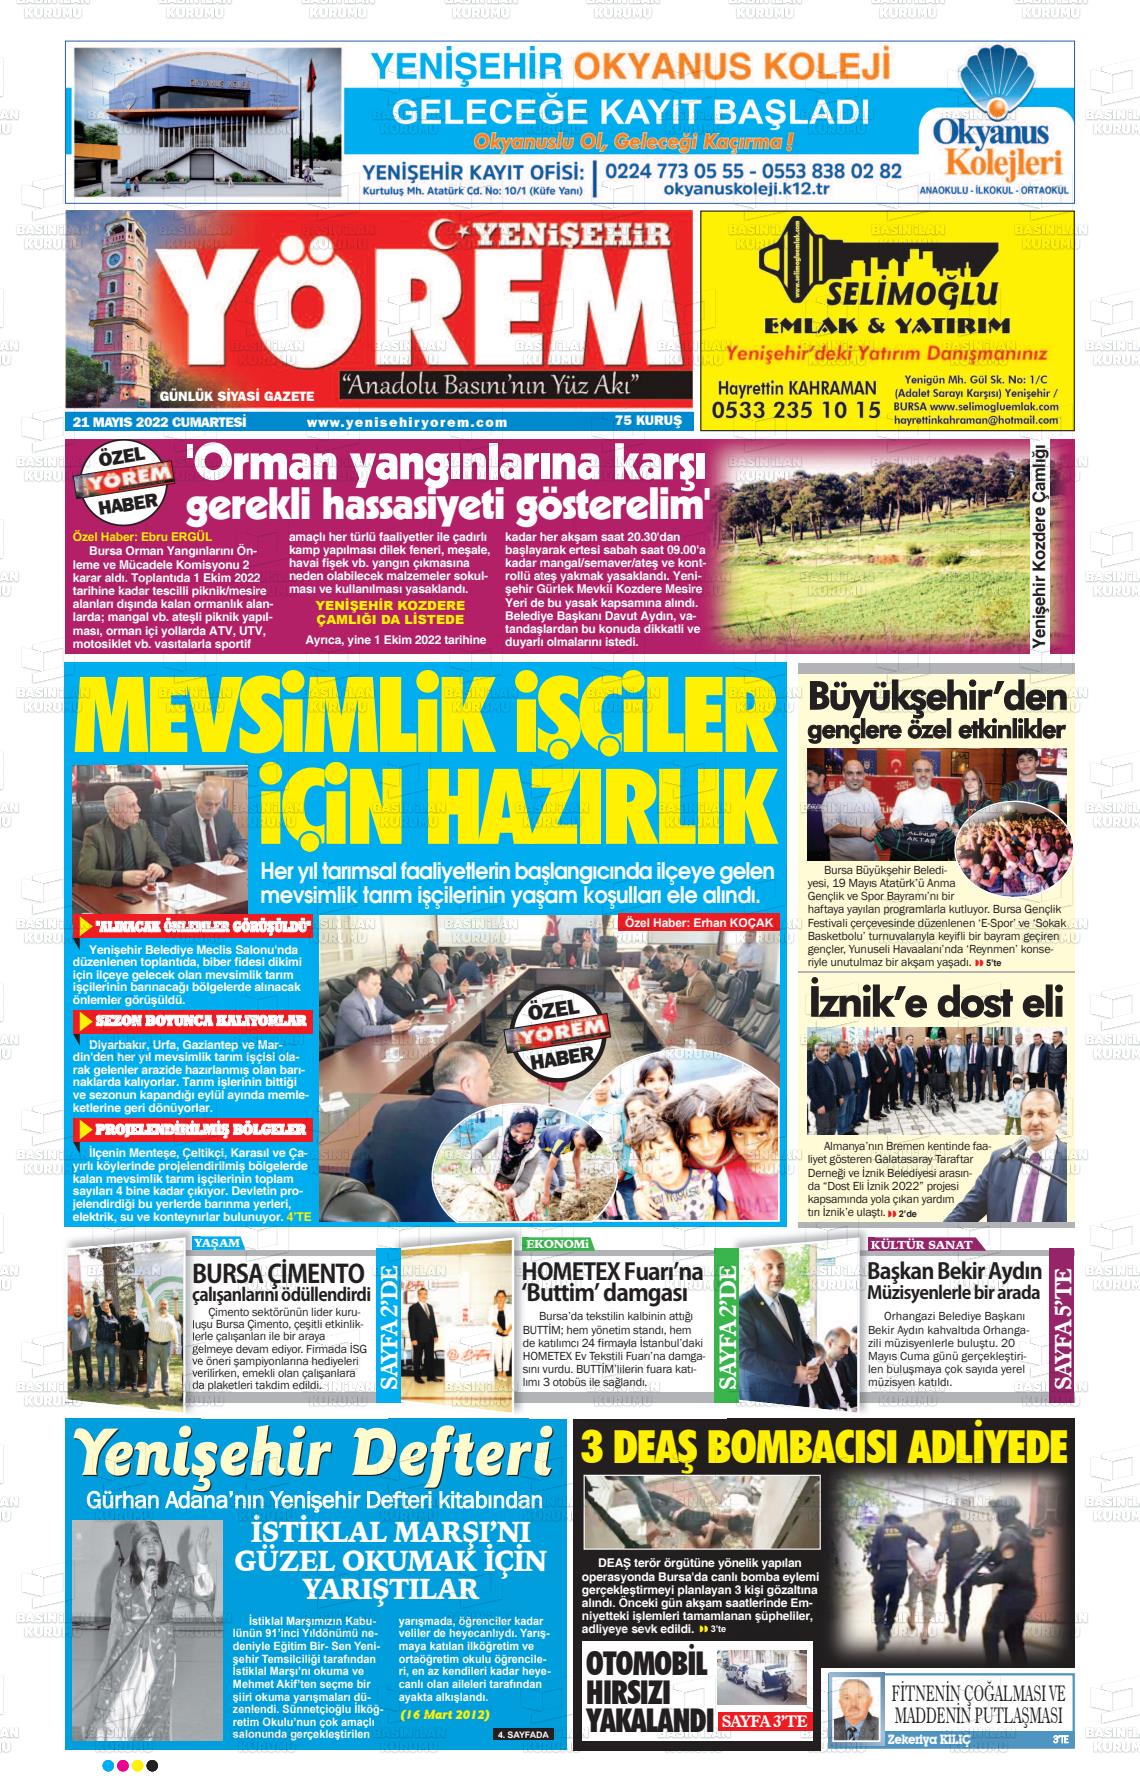 21 Mayıs 2022 Yenişehir Yörem Gazete Manşeti